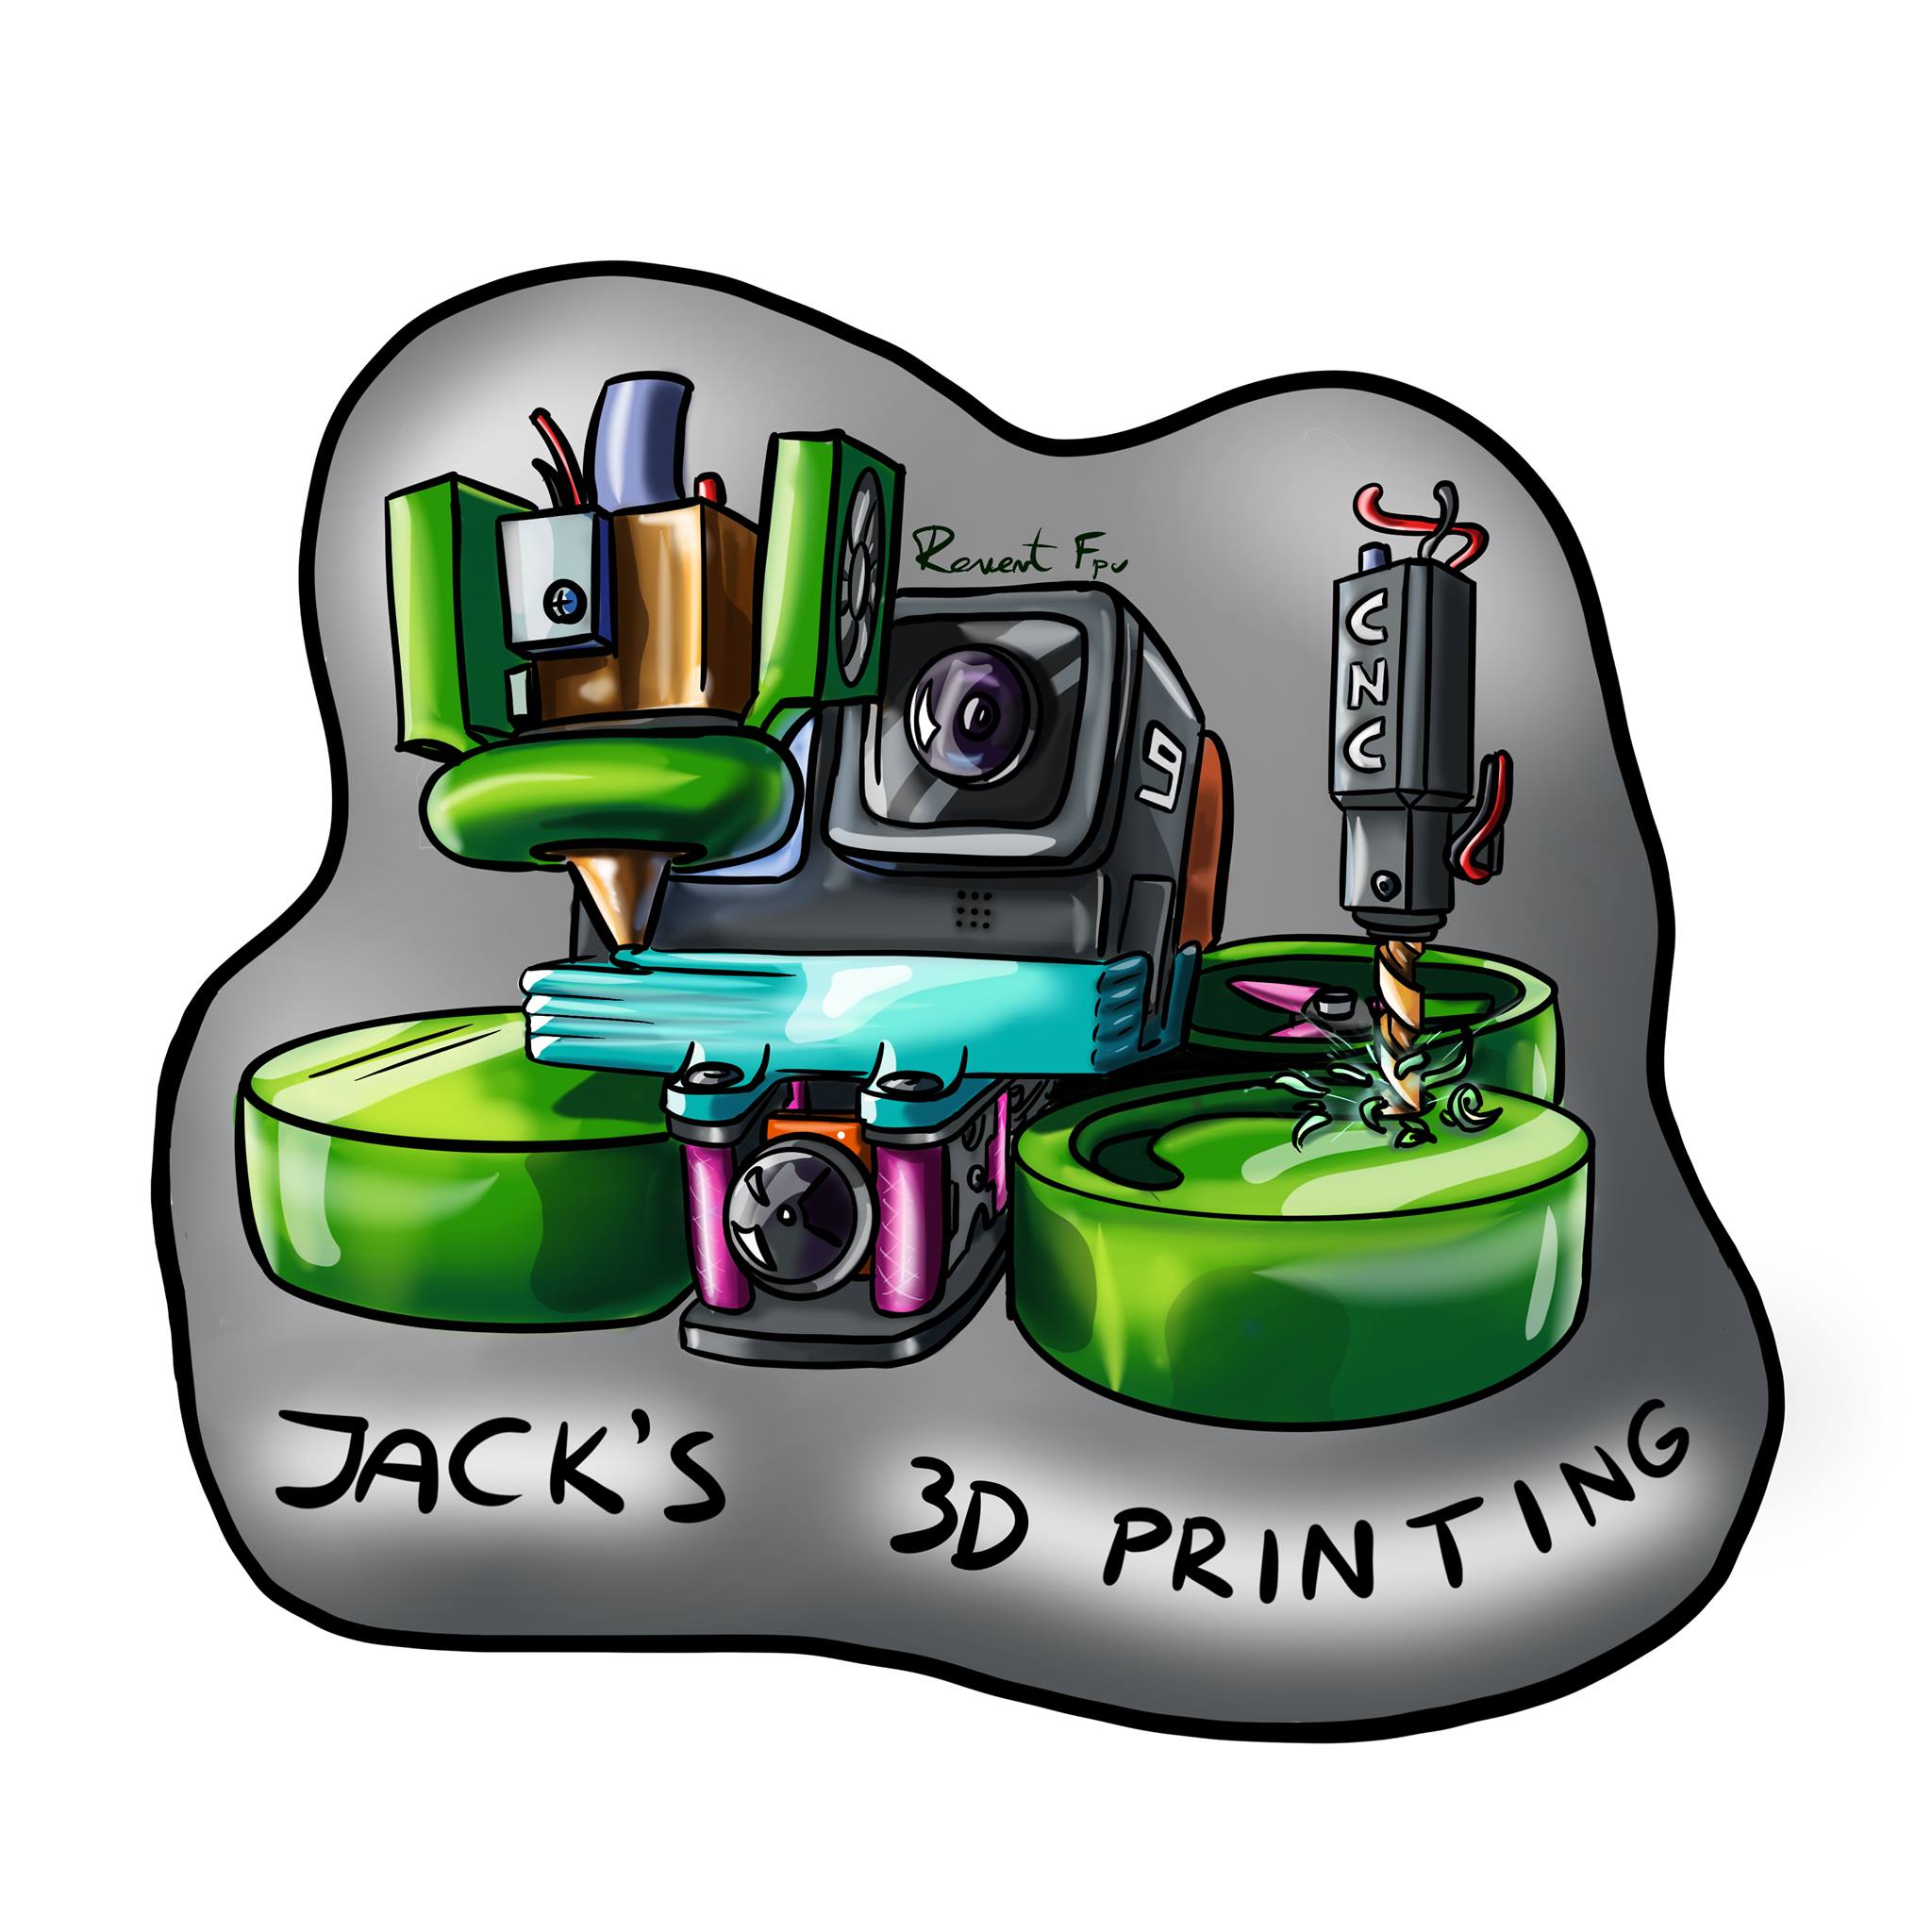 63,403 Prise Jack Images, Stock Photos, 3D objects, & Vectors